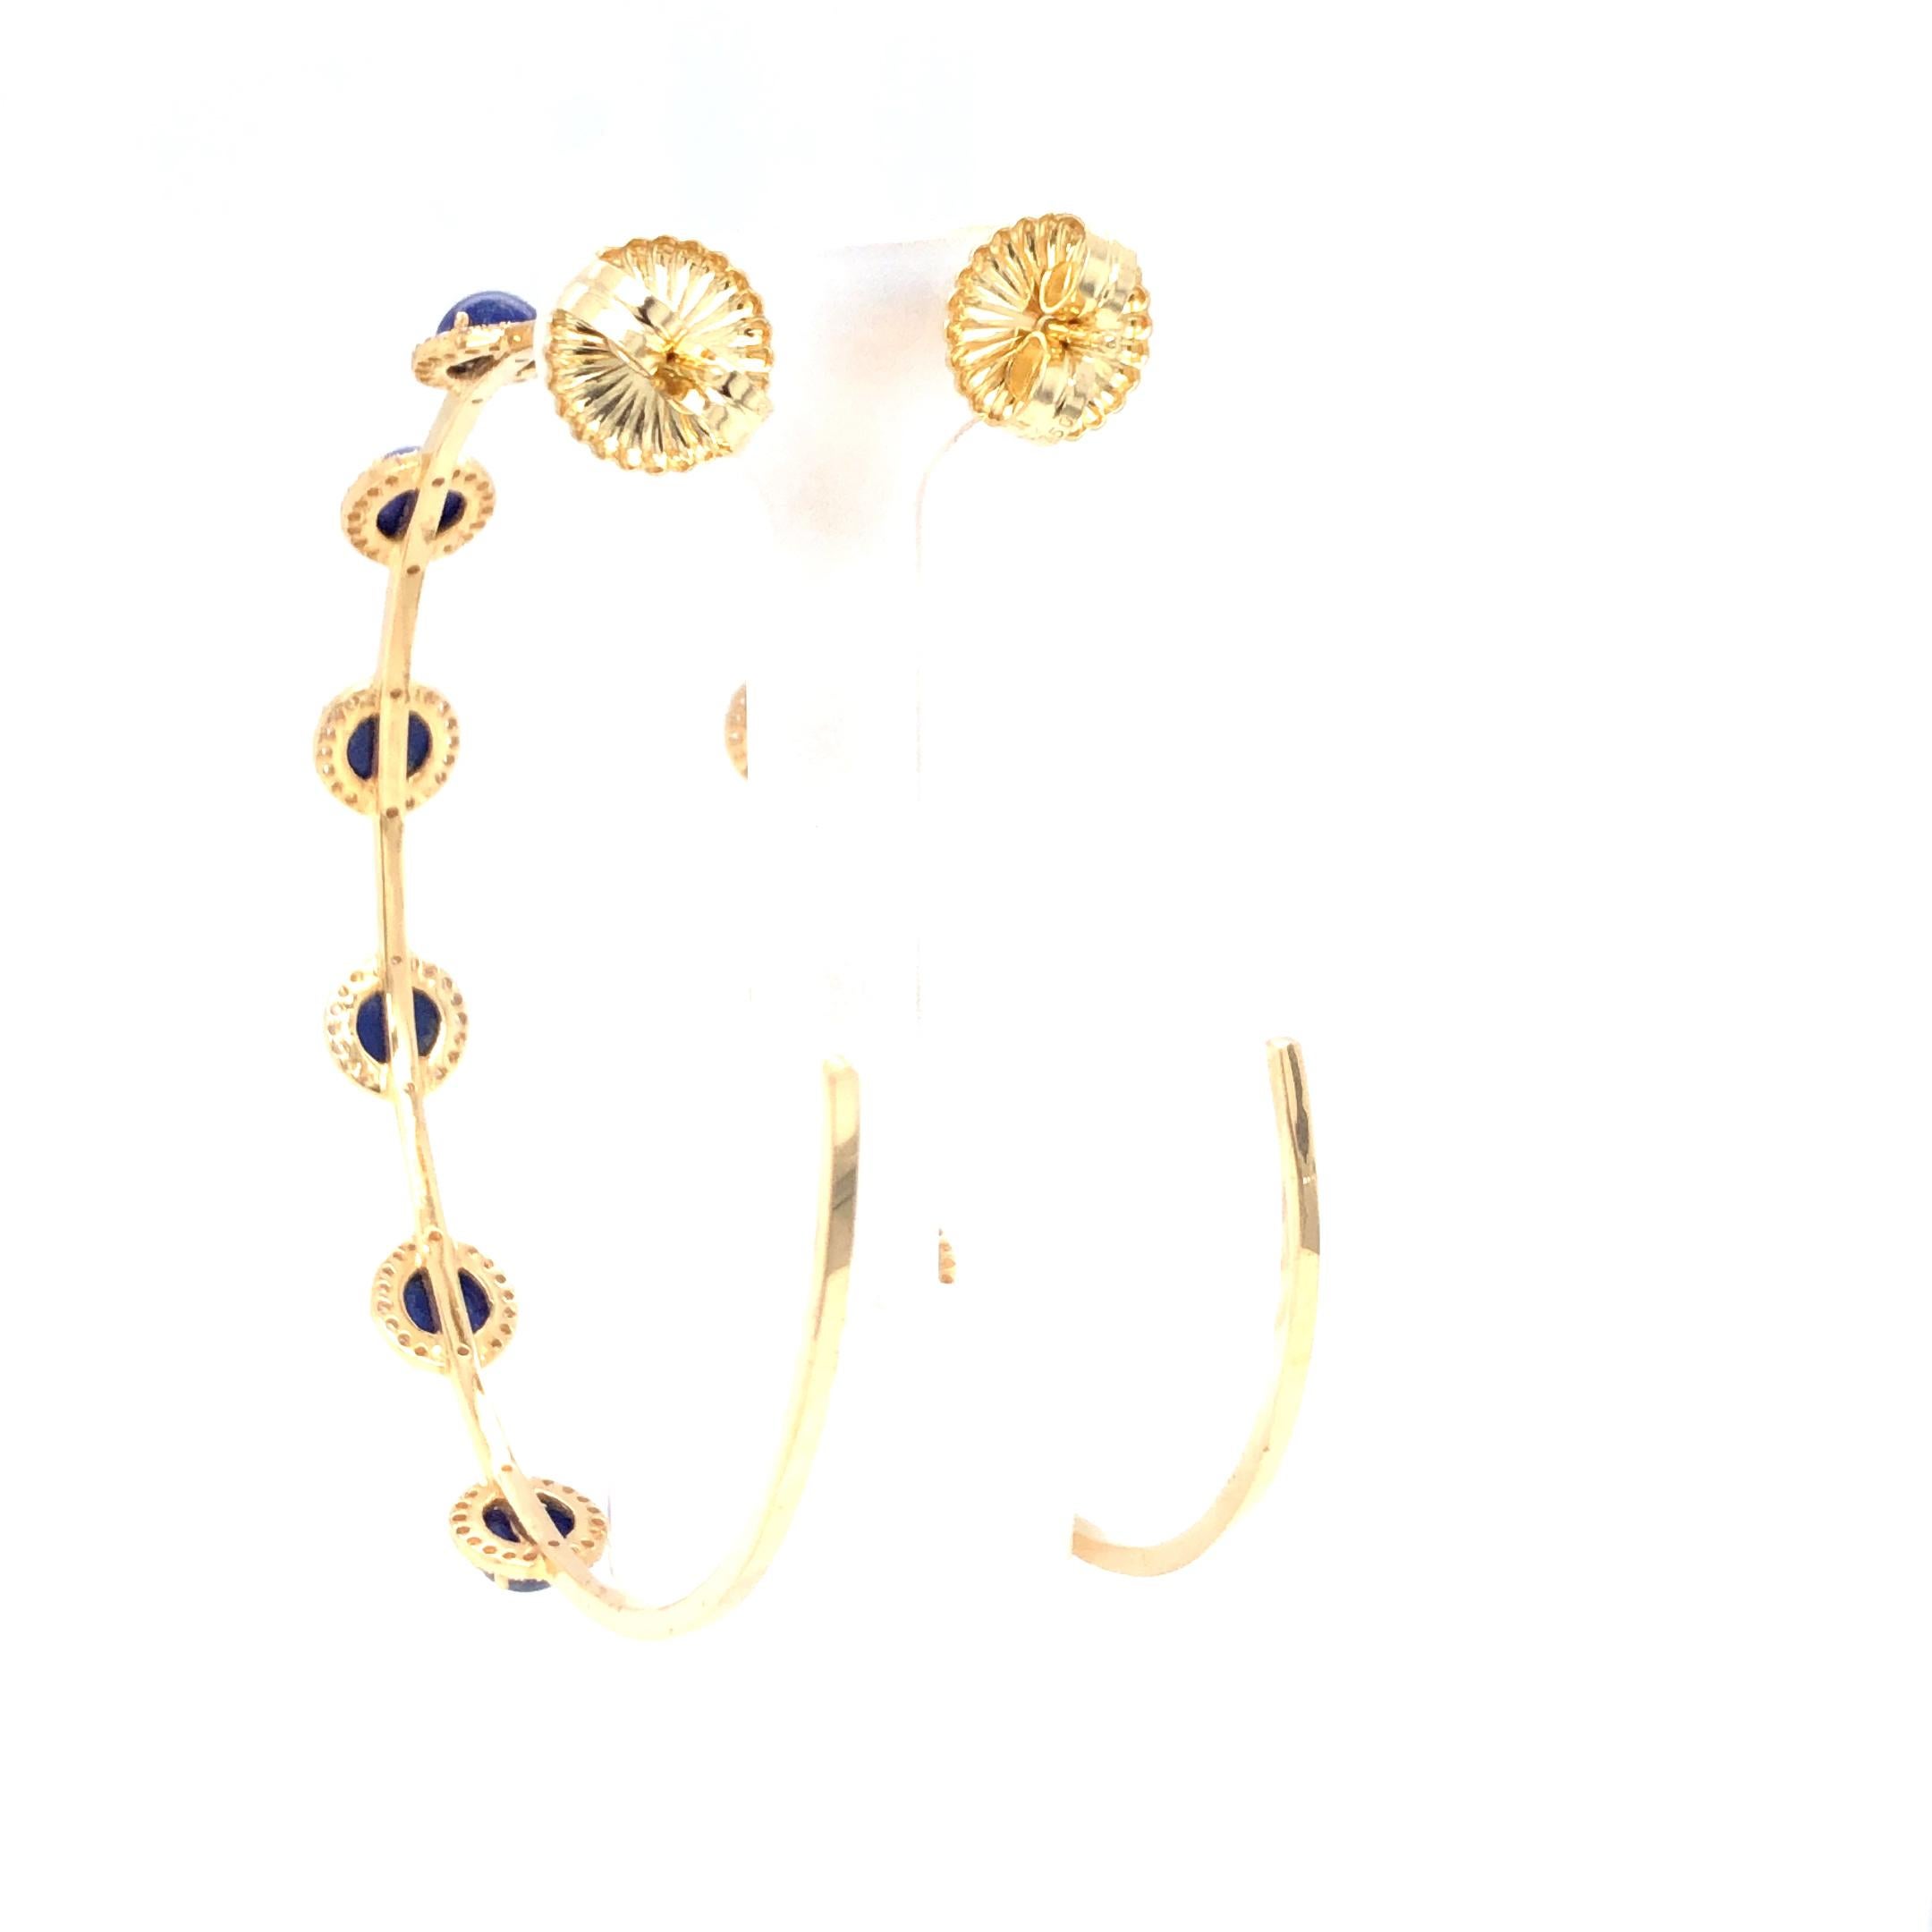 Cabochon Lapis Lazuli and Diamond Hoops 18K Yellow Gold